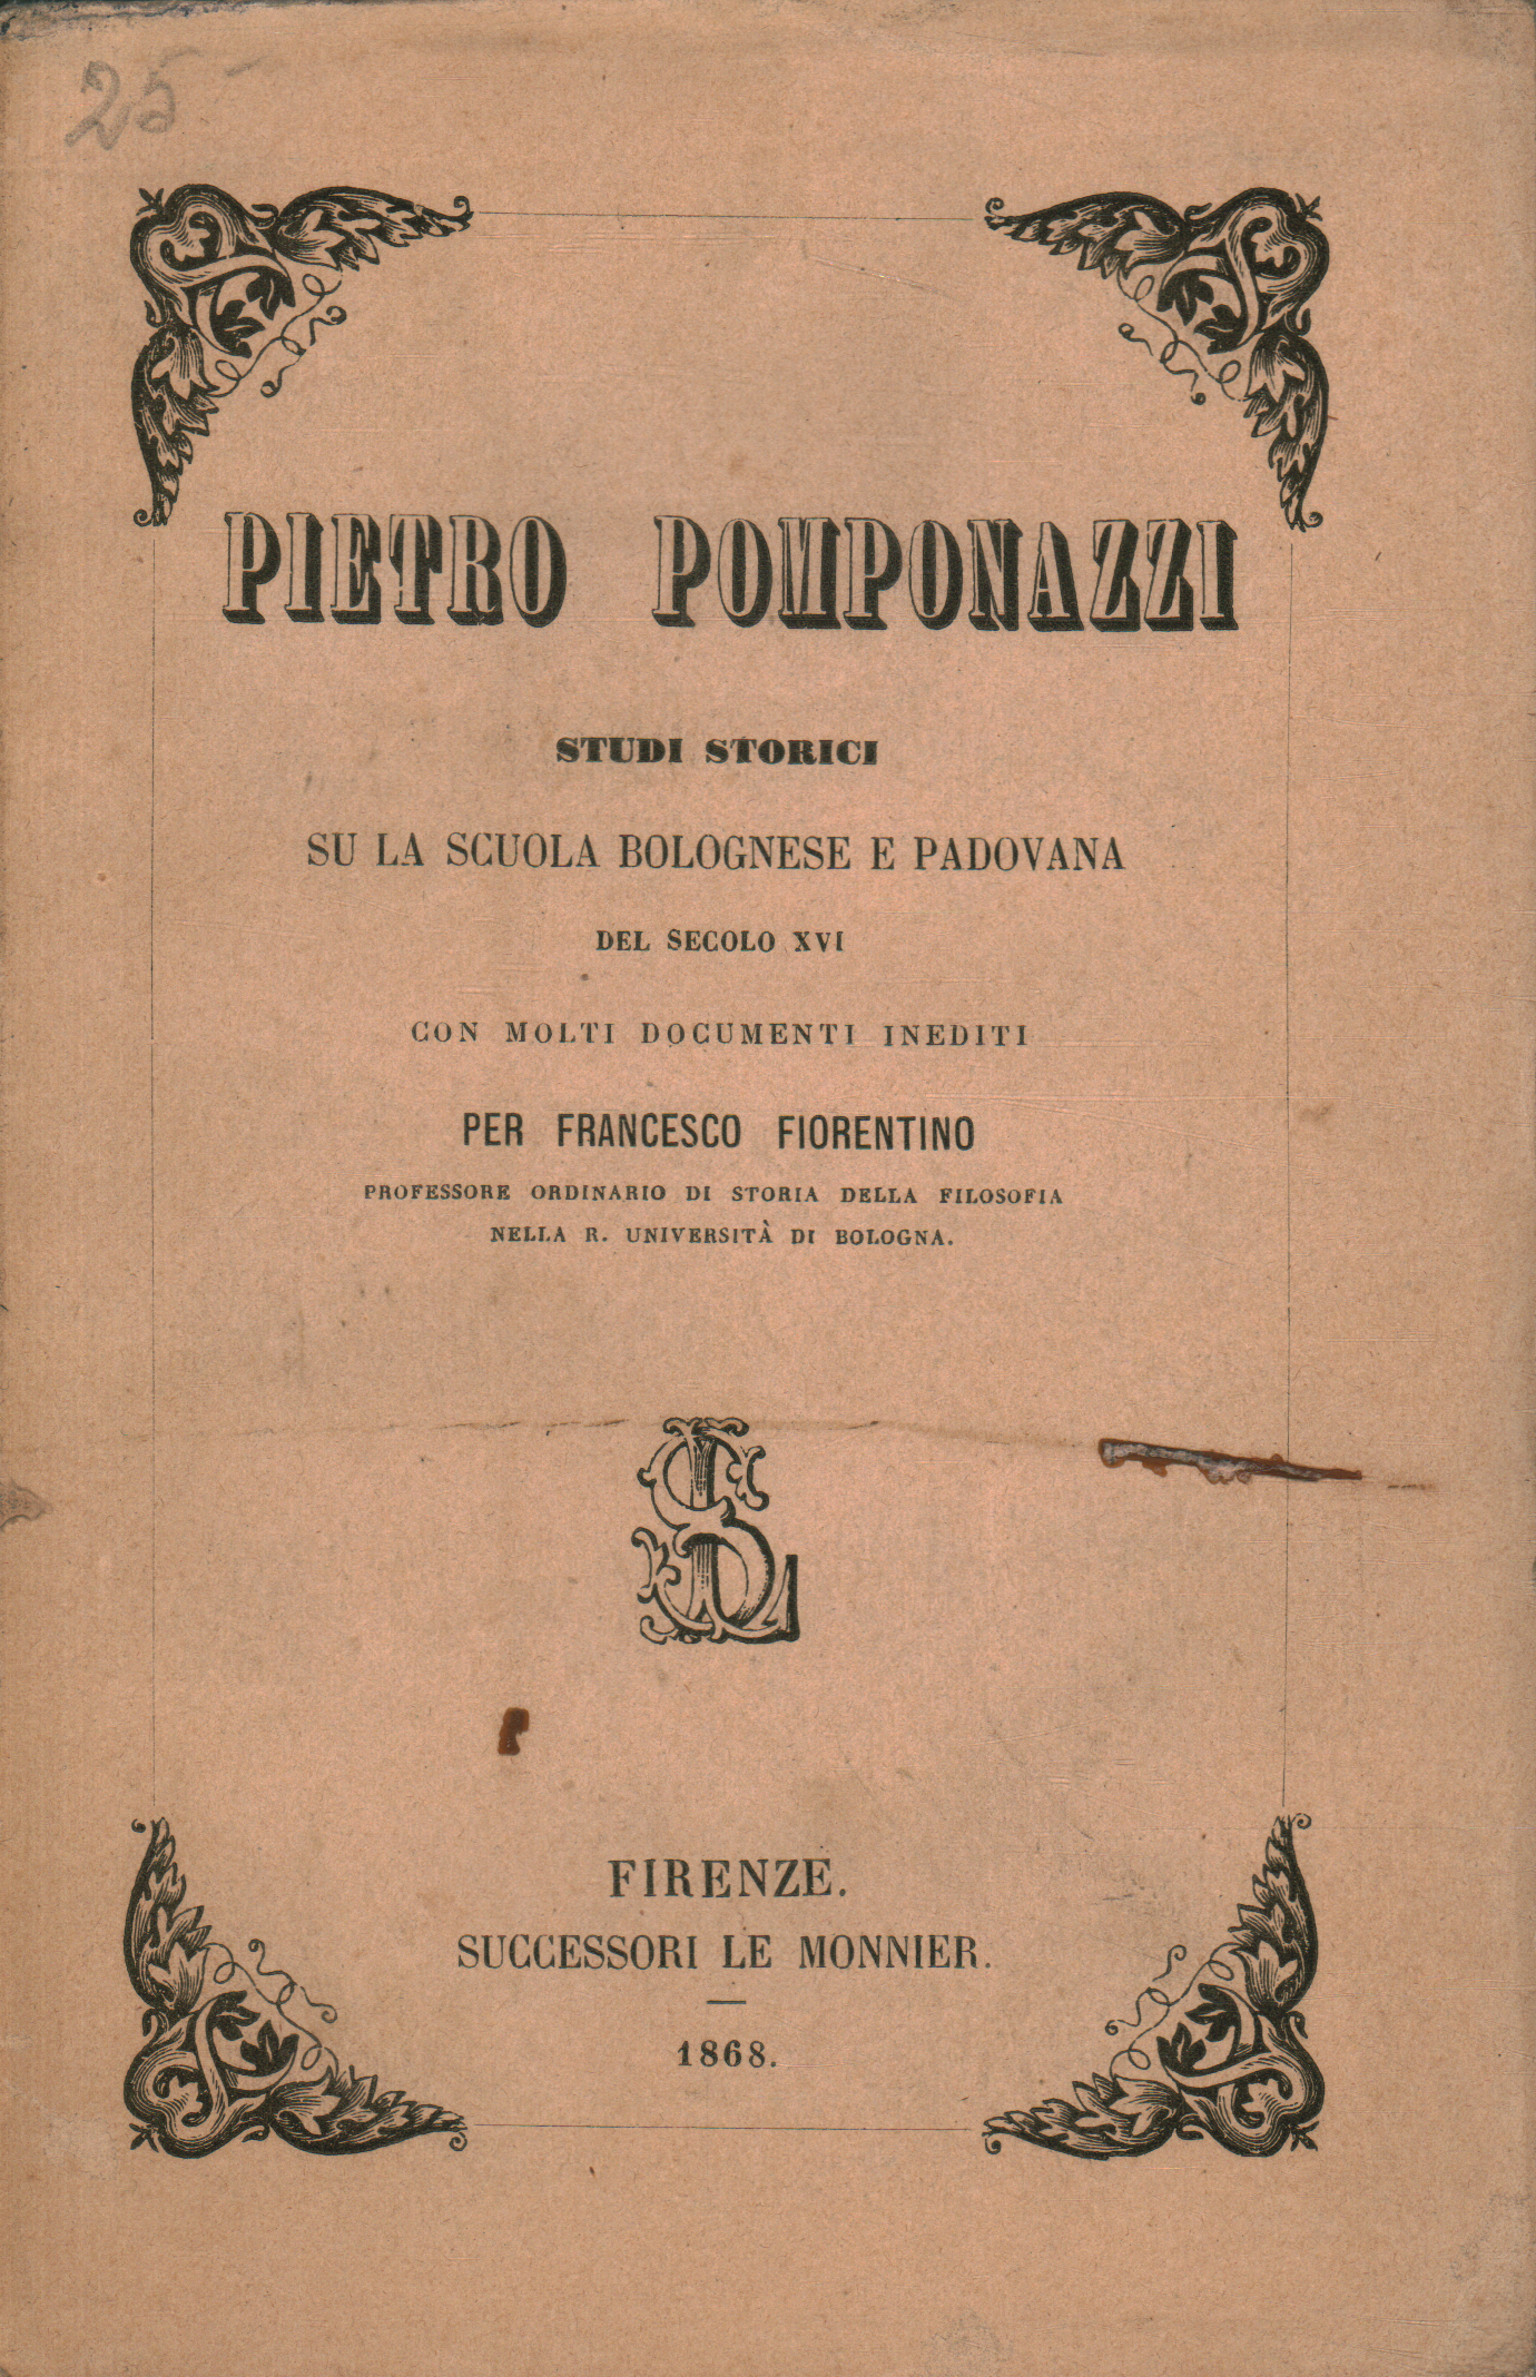 Pietro Pomponazzi. Historical studies on the% 2, Pietro Pomponazzi. Historical studies on the% 2